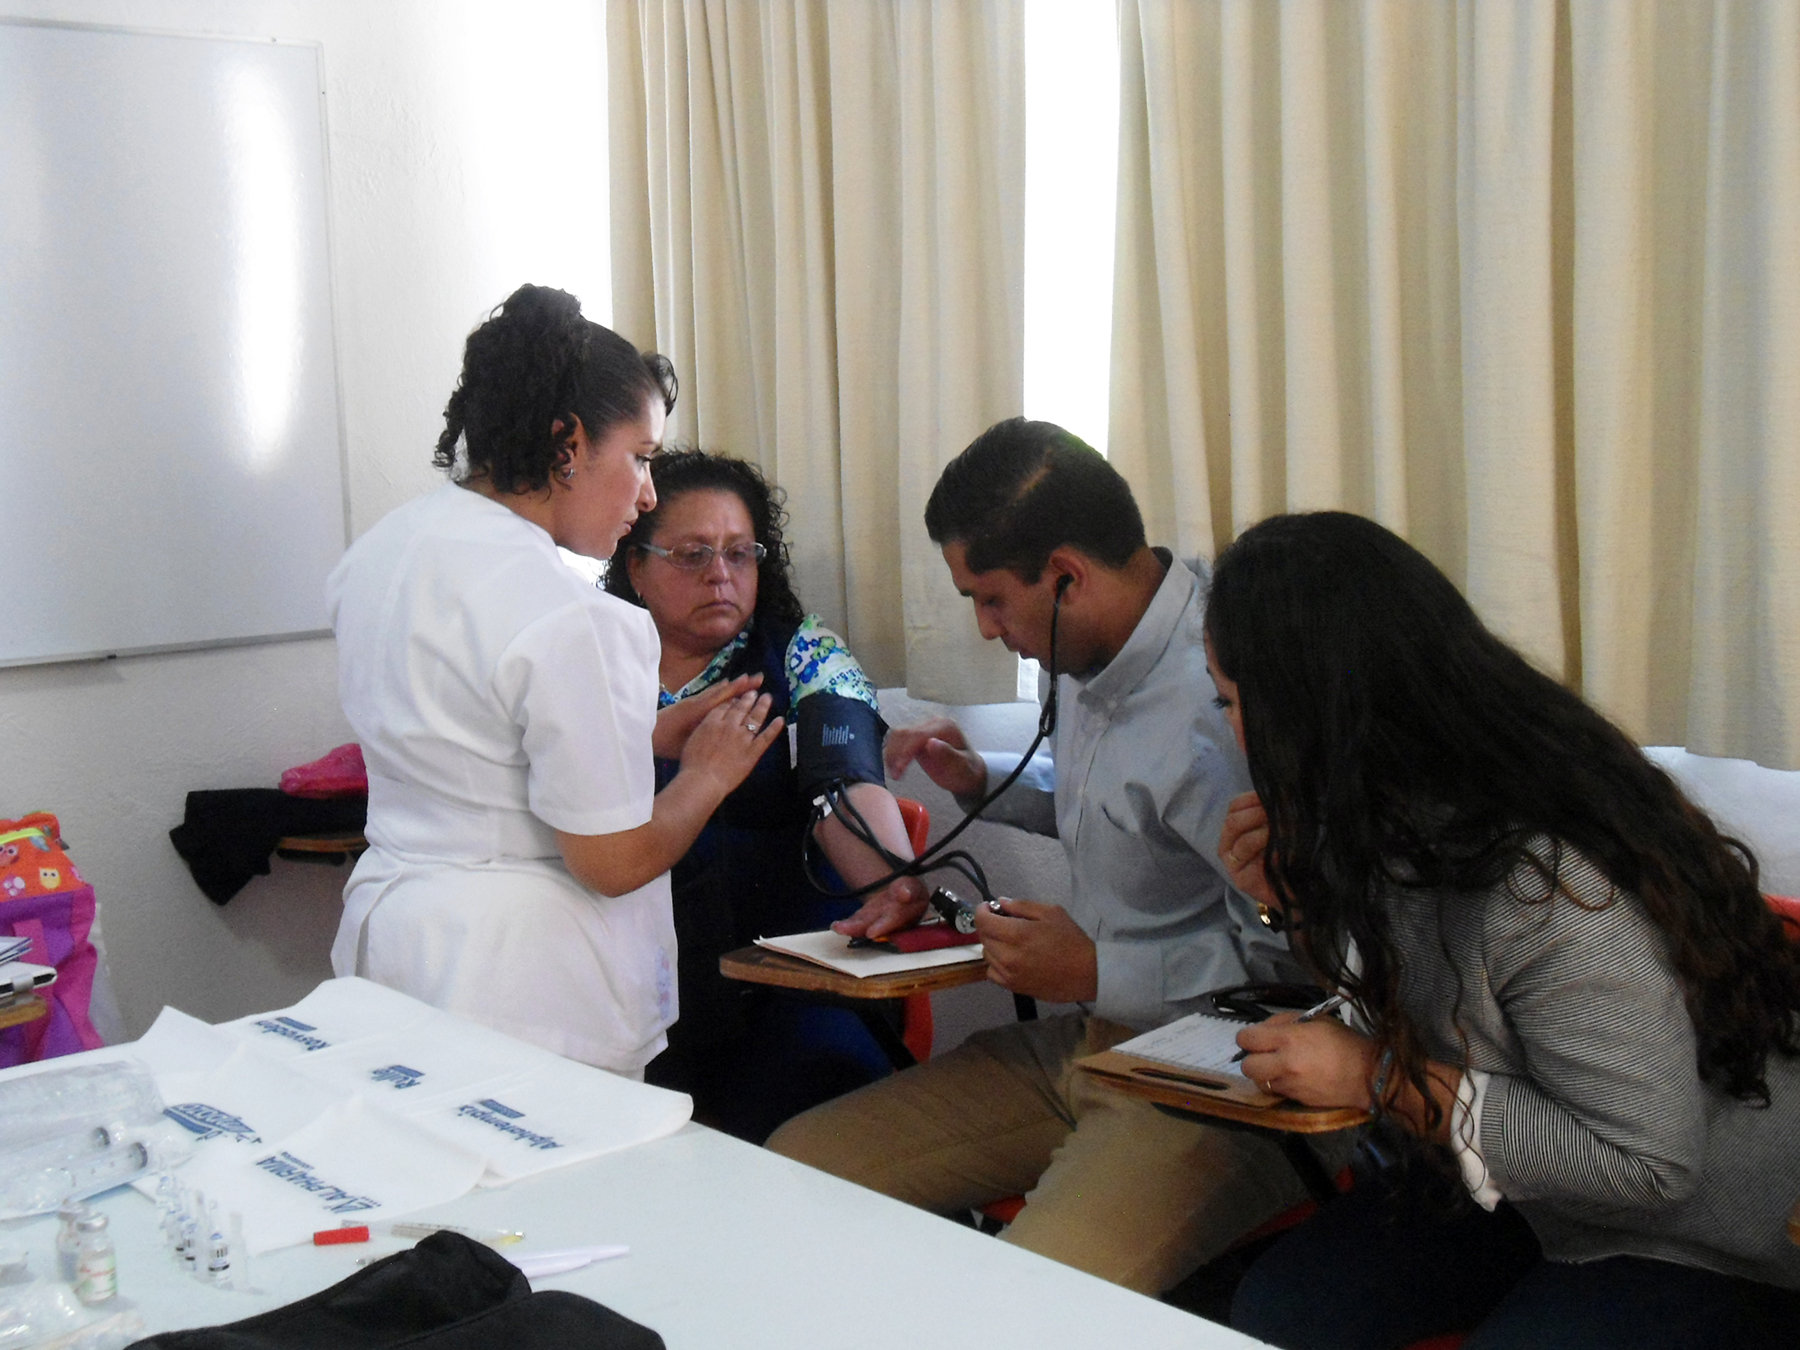 
Trabajadores del Inapam, en la Ciudad de México, participaron en un evento denominado Jornadas de Salud, que comprendió numerosas actividades encaminadas al cuidado de la salud, primeros auxilios y, en general, mejores hábitos de vida.